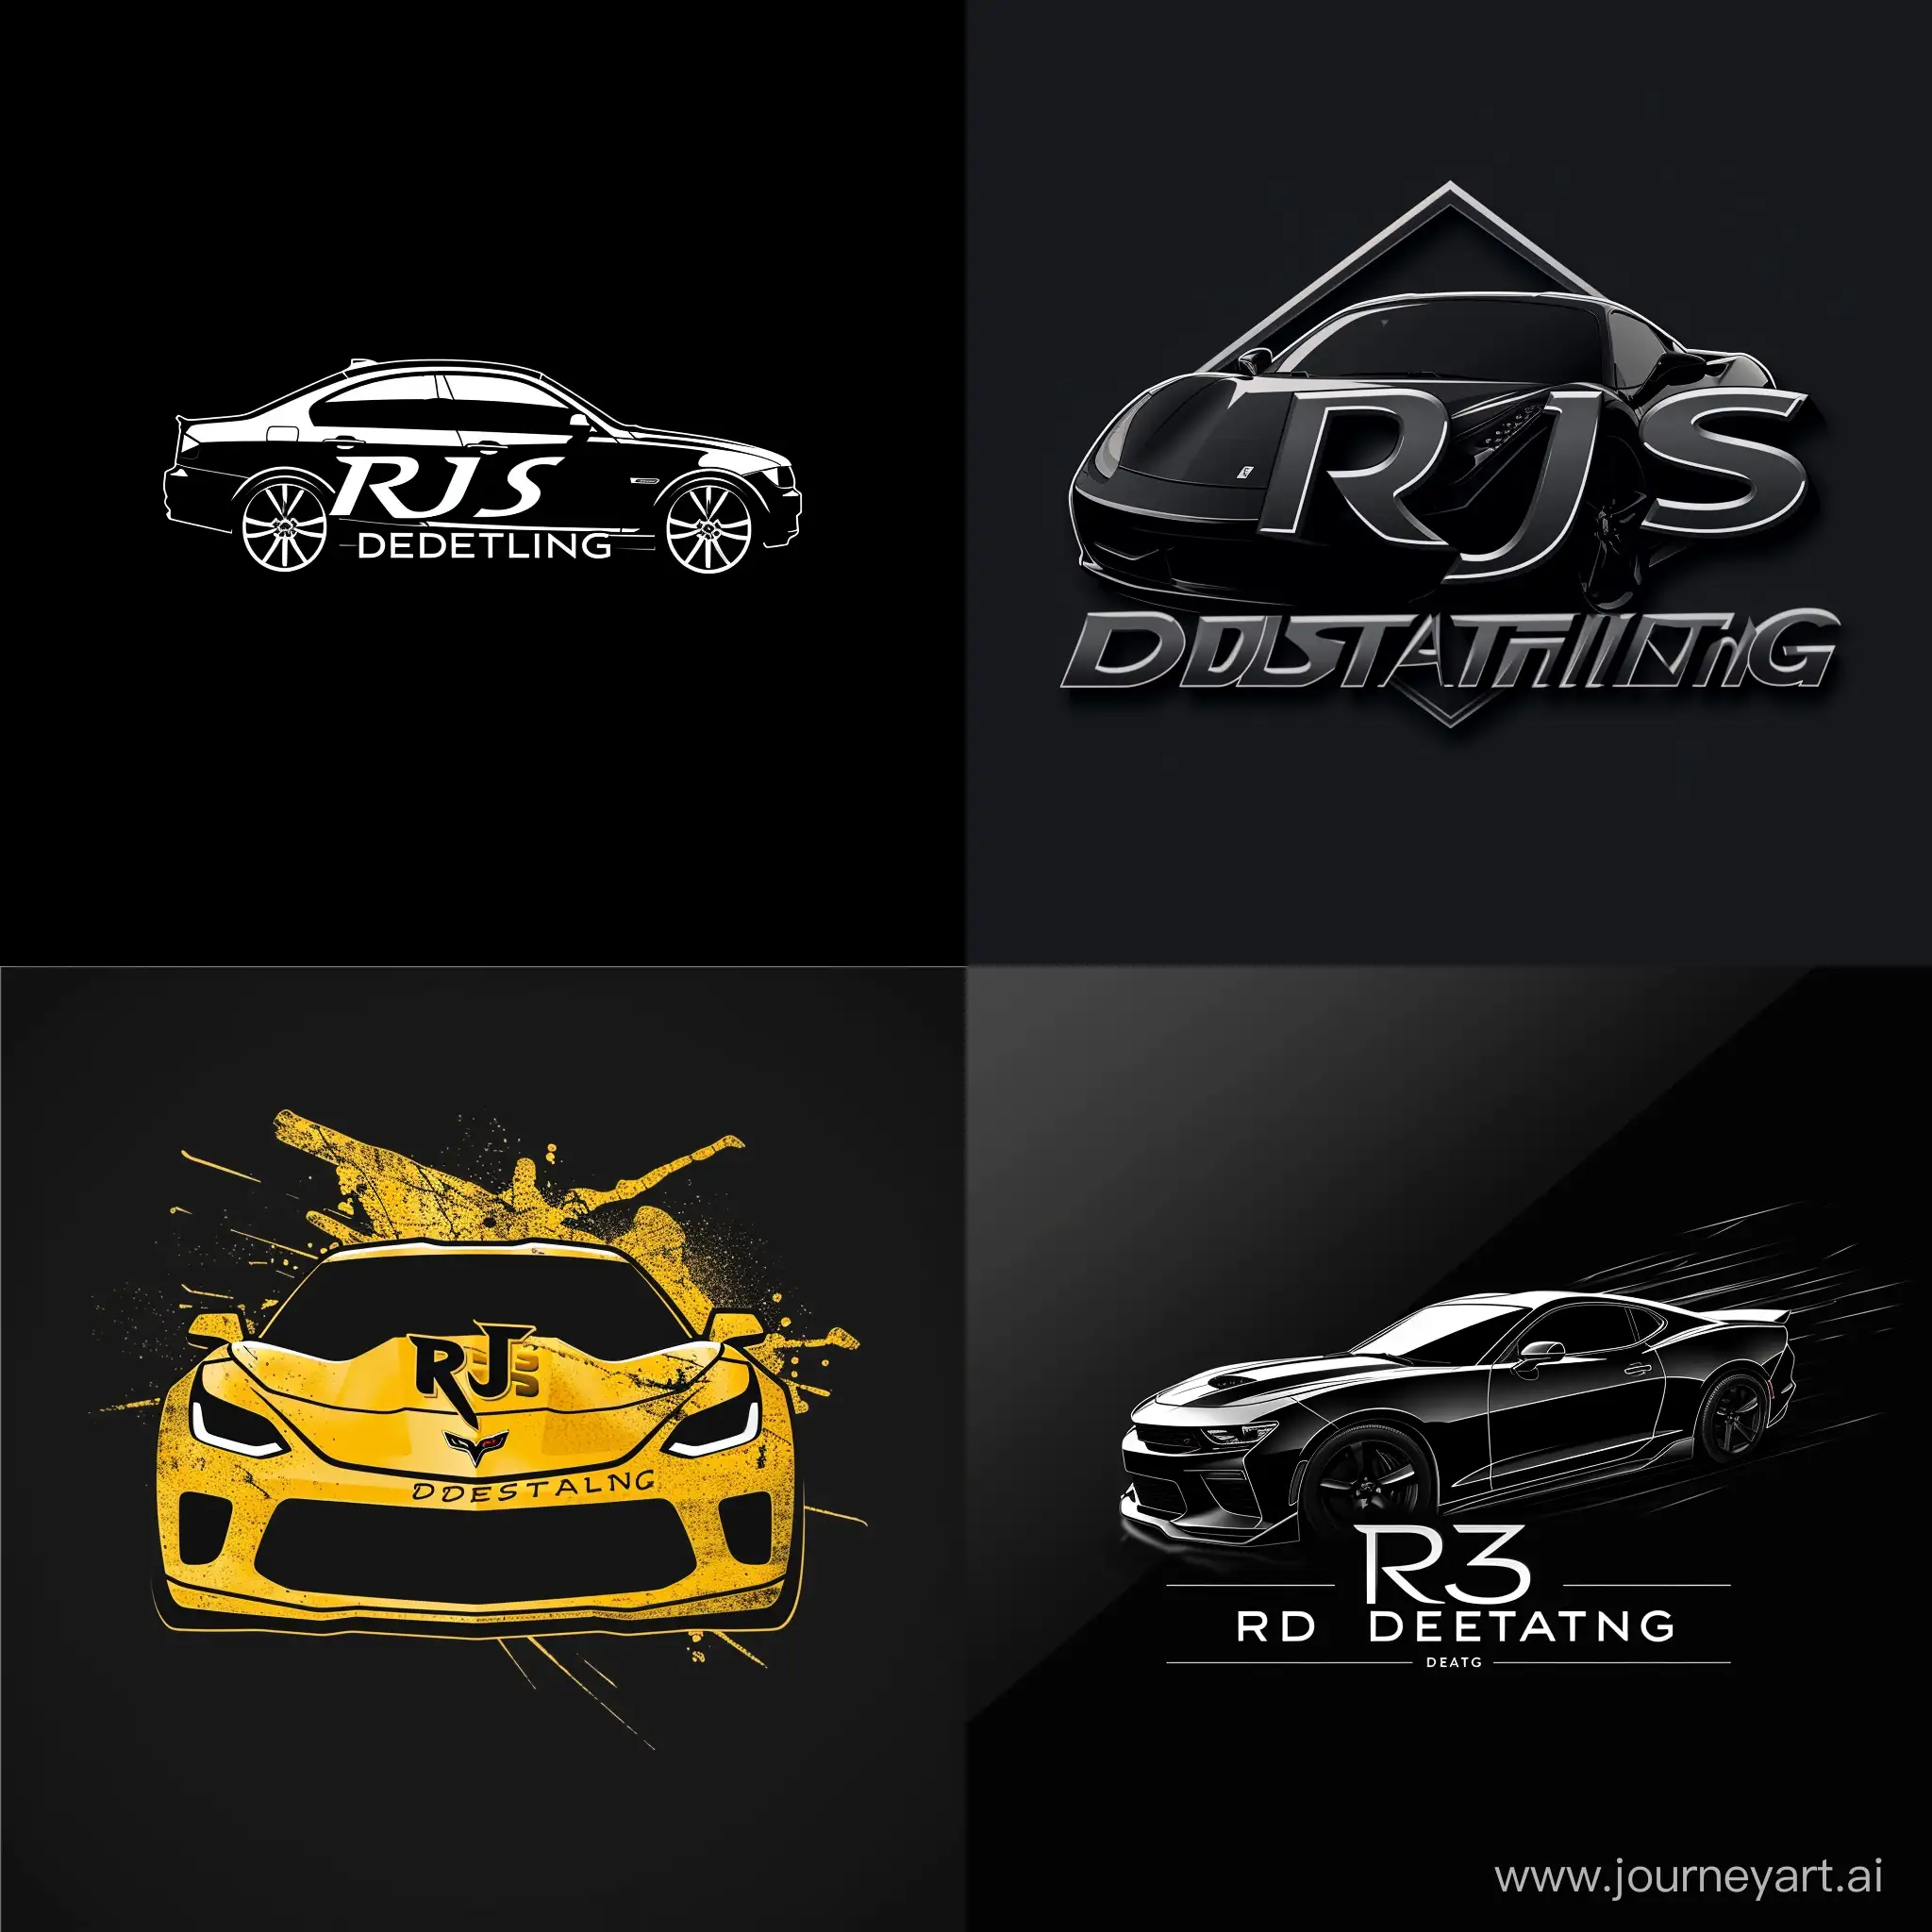 Professional-Car-Detailing-Logo-Design-RJS-DETAILING